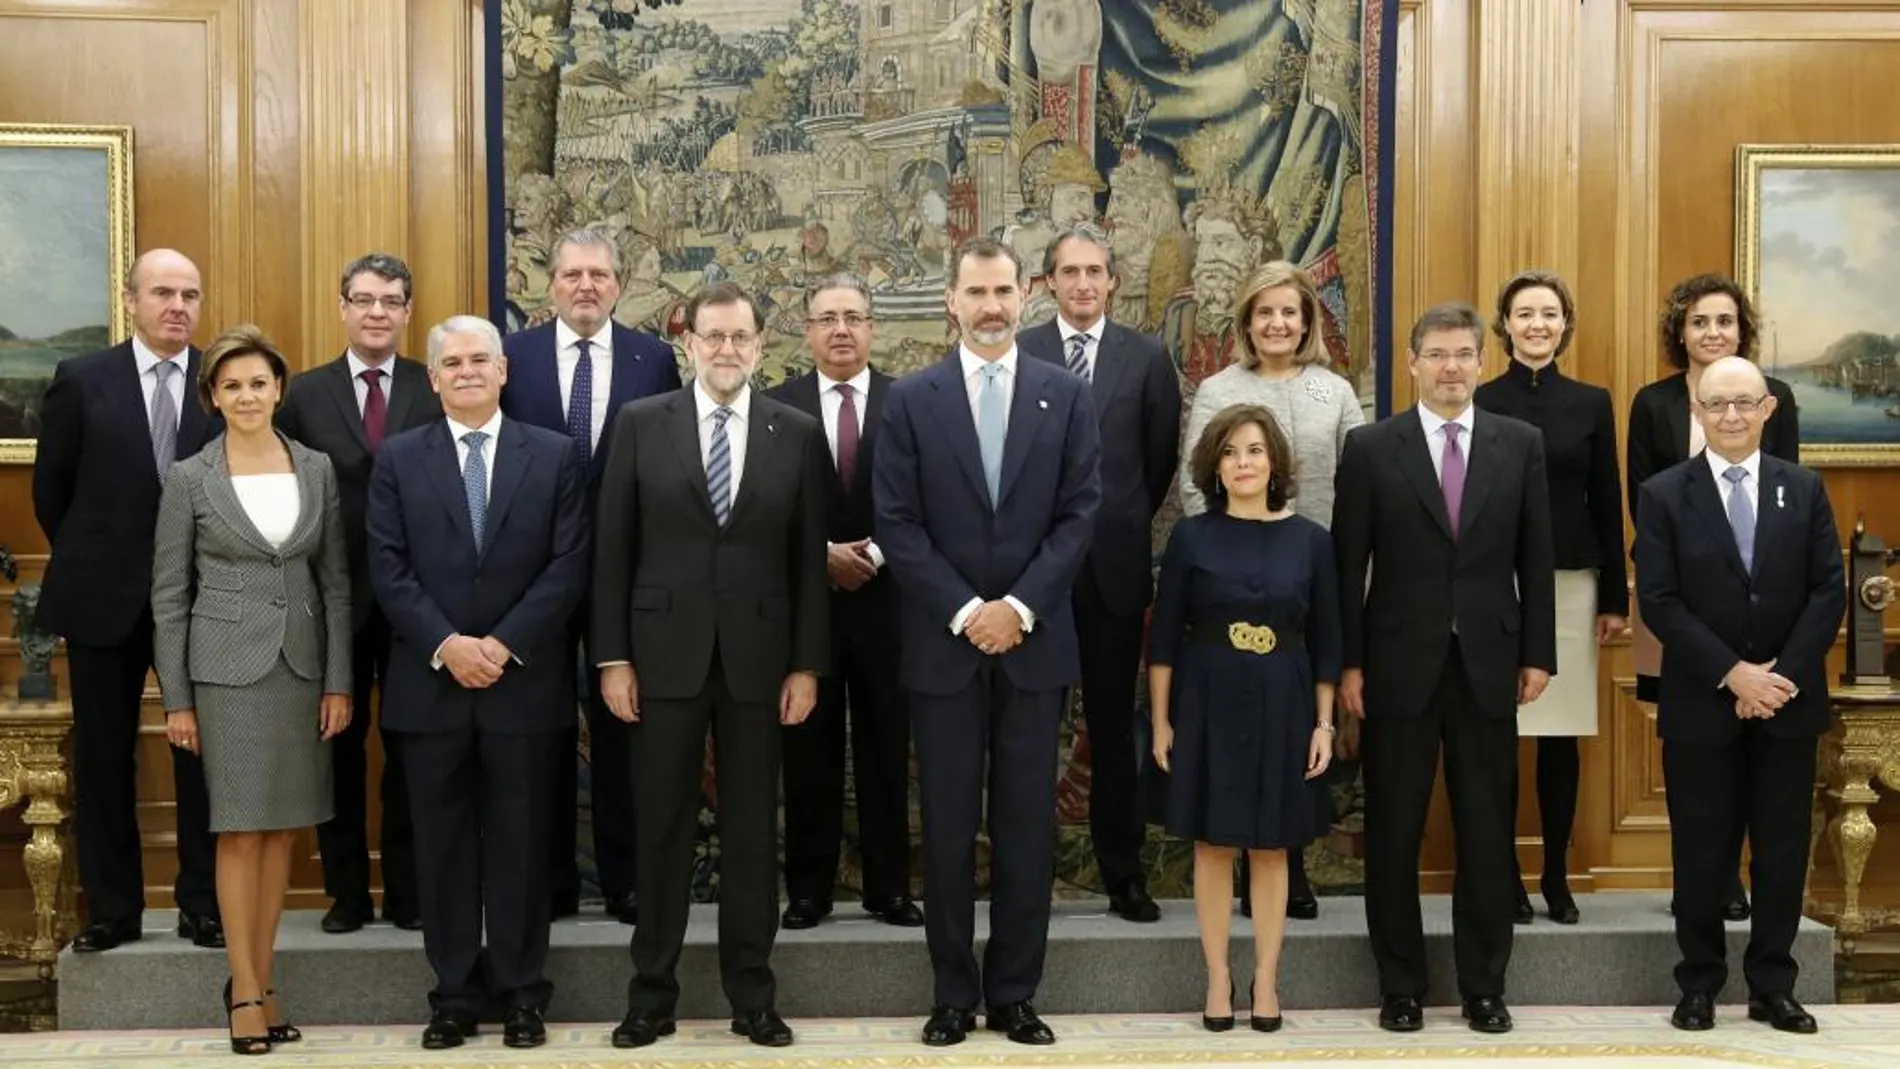 El rey Felipe VI posa con el jefe del Ejecutivo, Mariano Rajoy, y los 13 ministros de su nuevo Gobierno, que han jurado o prometido hoy sus cargos ante él en una ceremonia celebrada en el Palacio de la Zarzuela